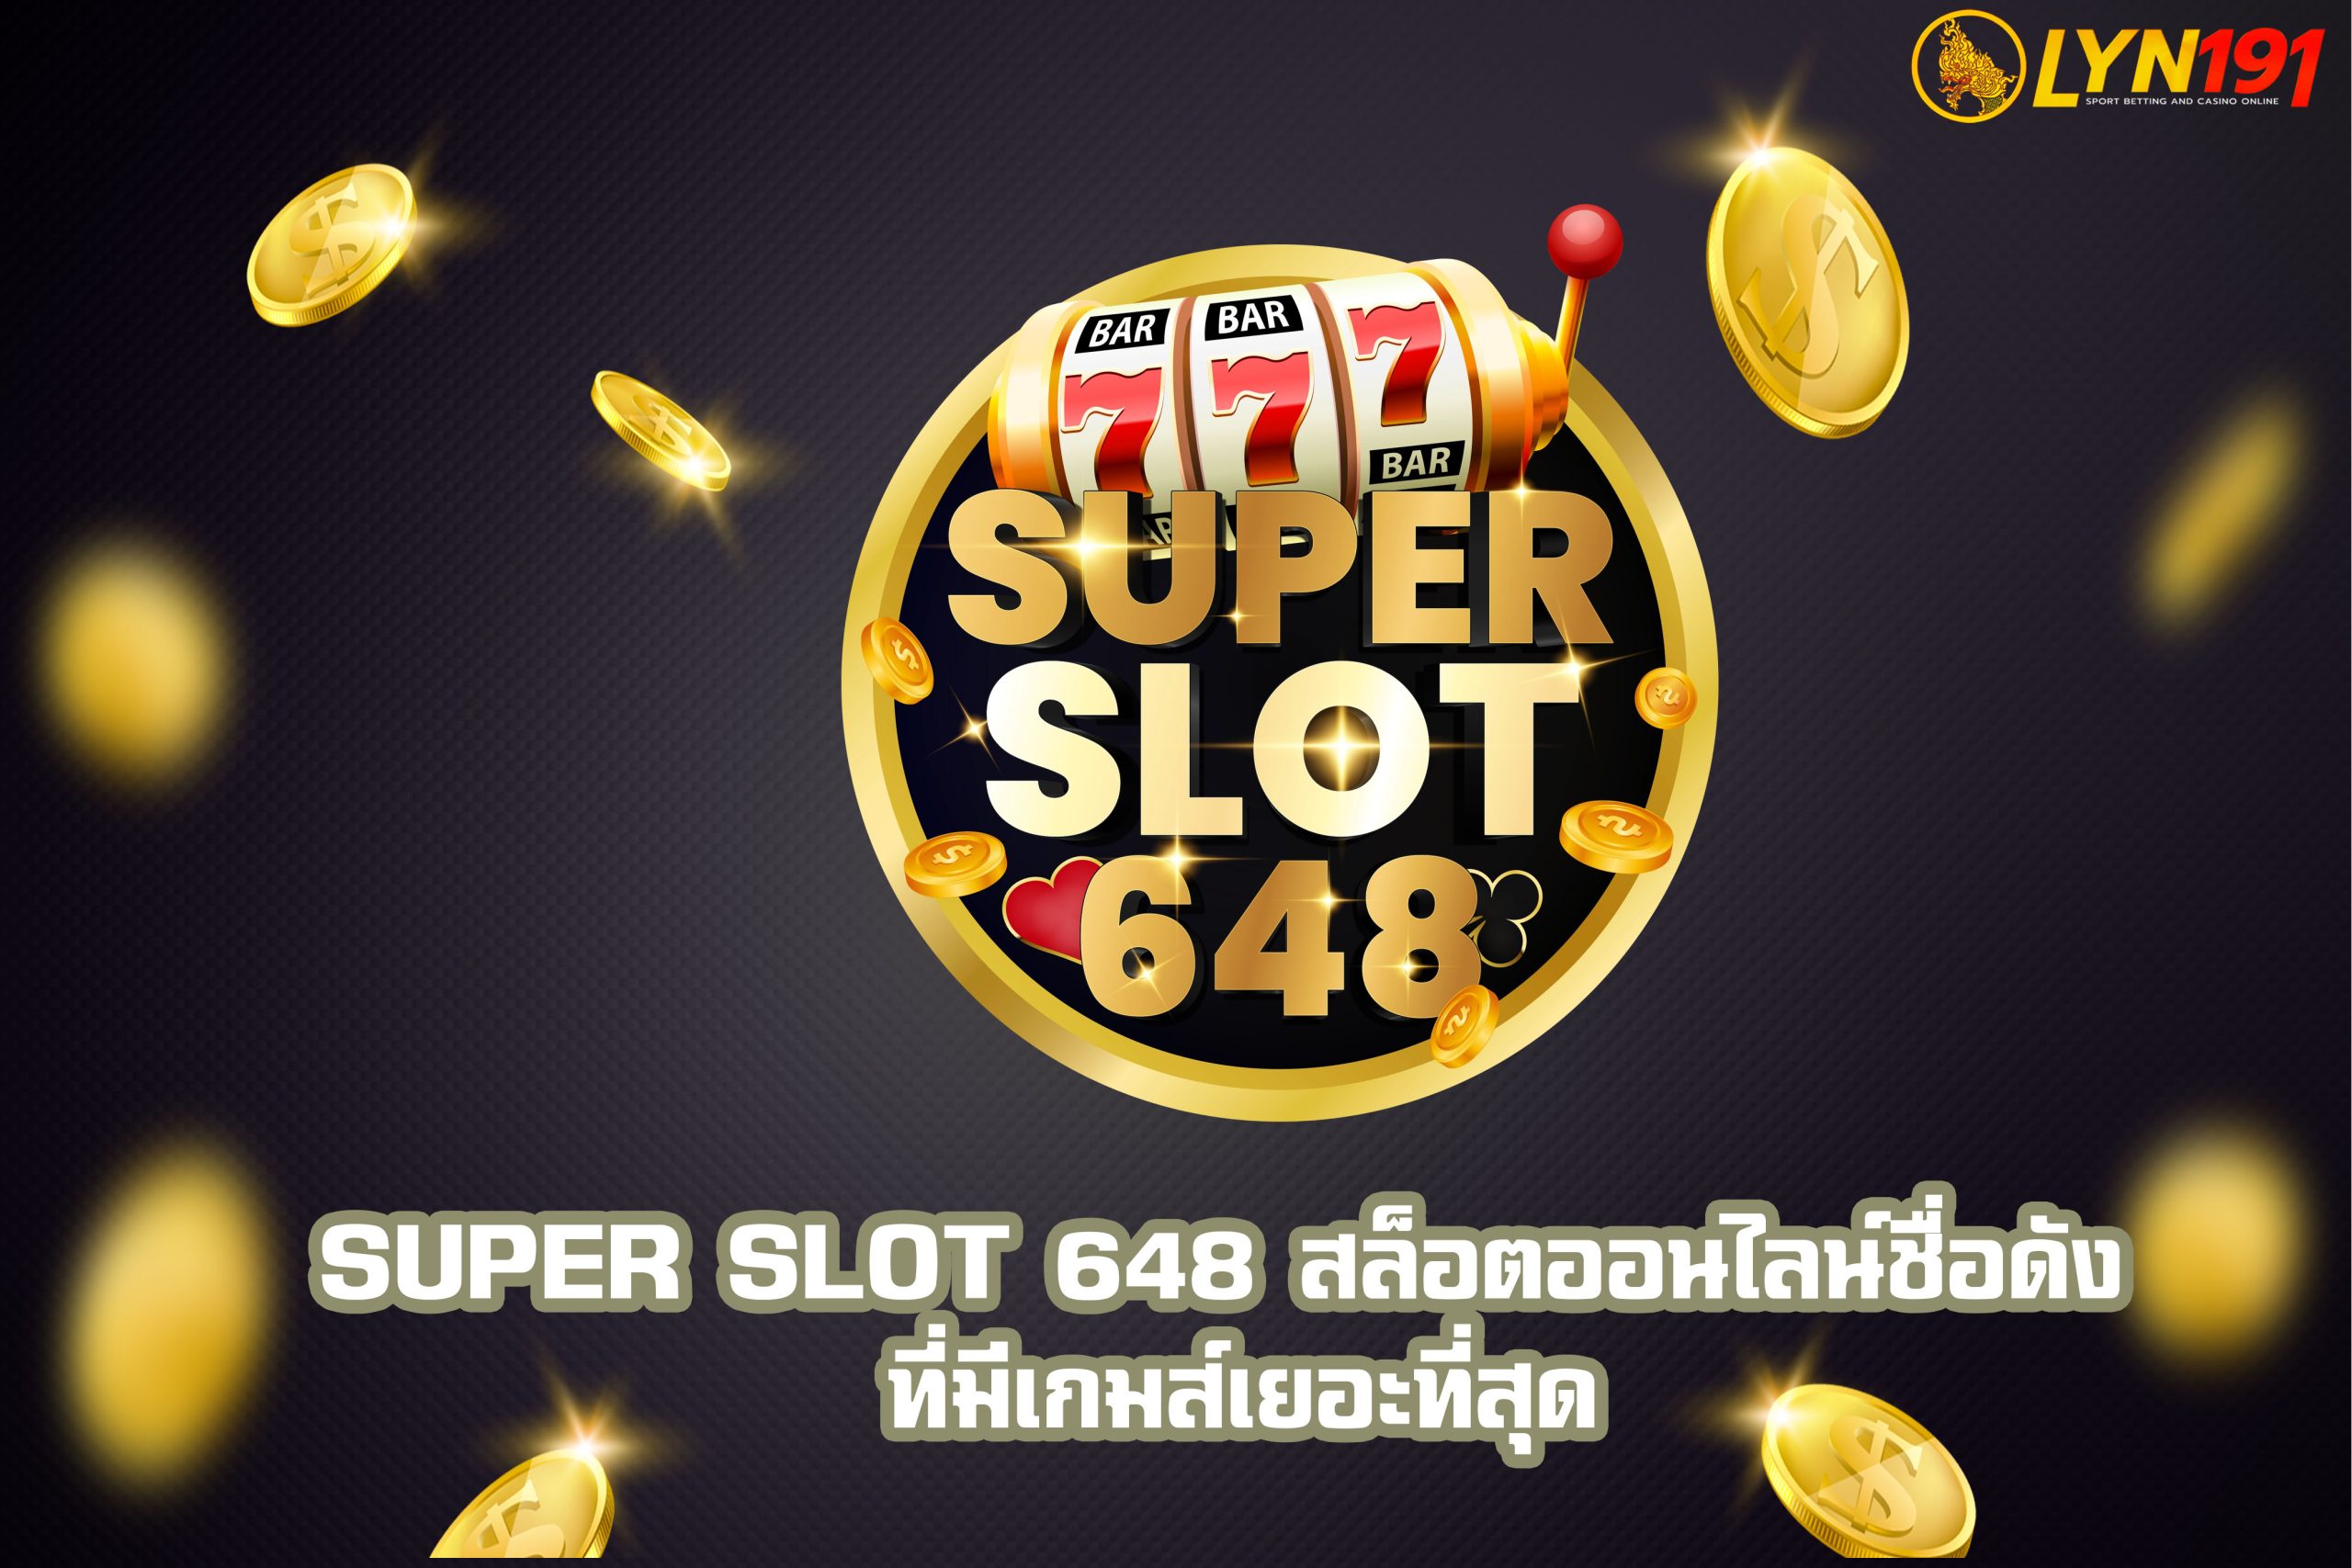 SUPER SLOT 648